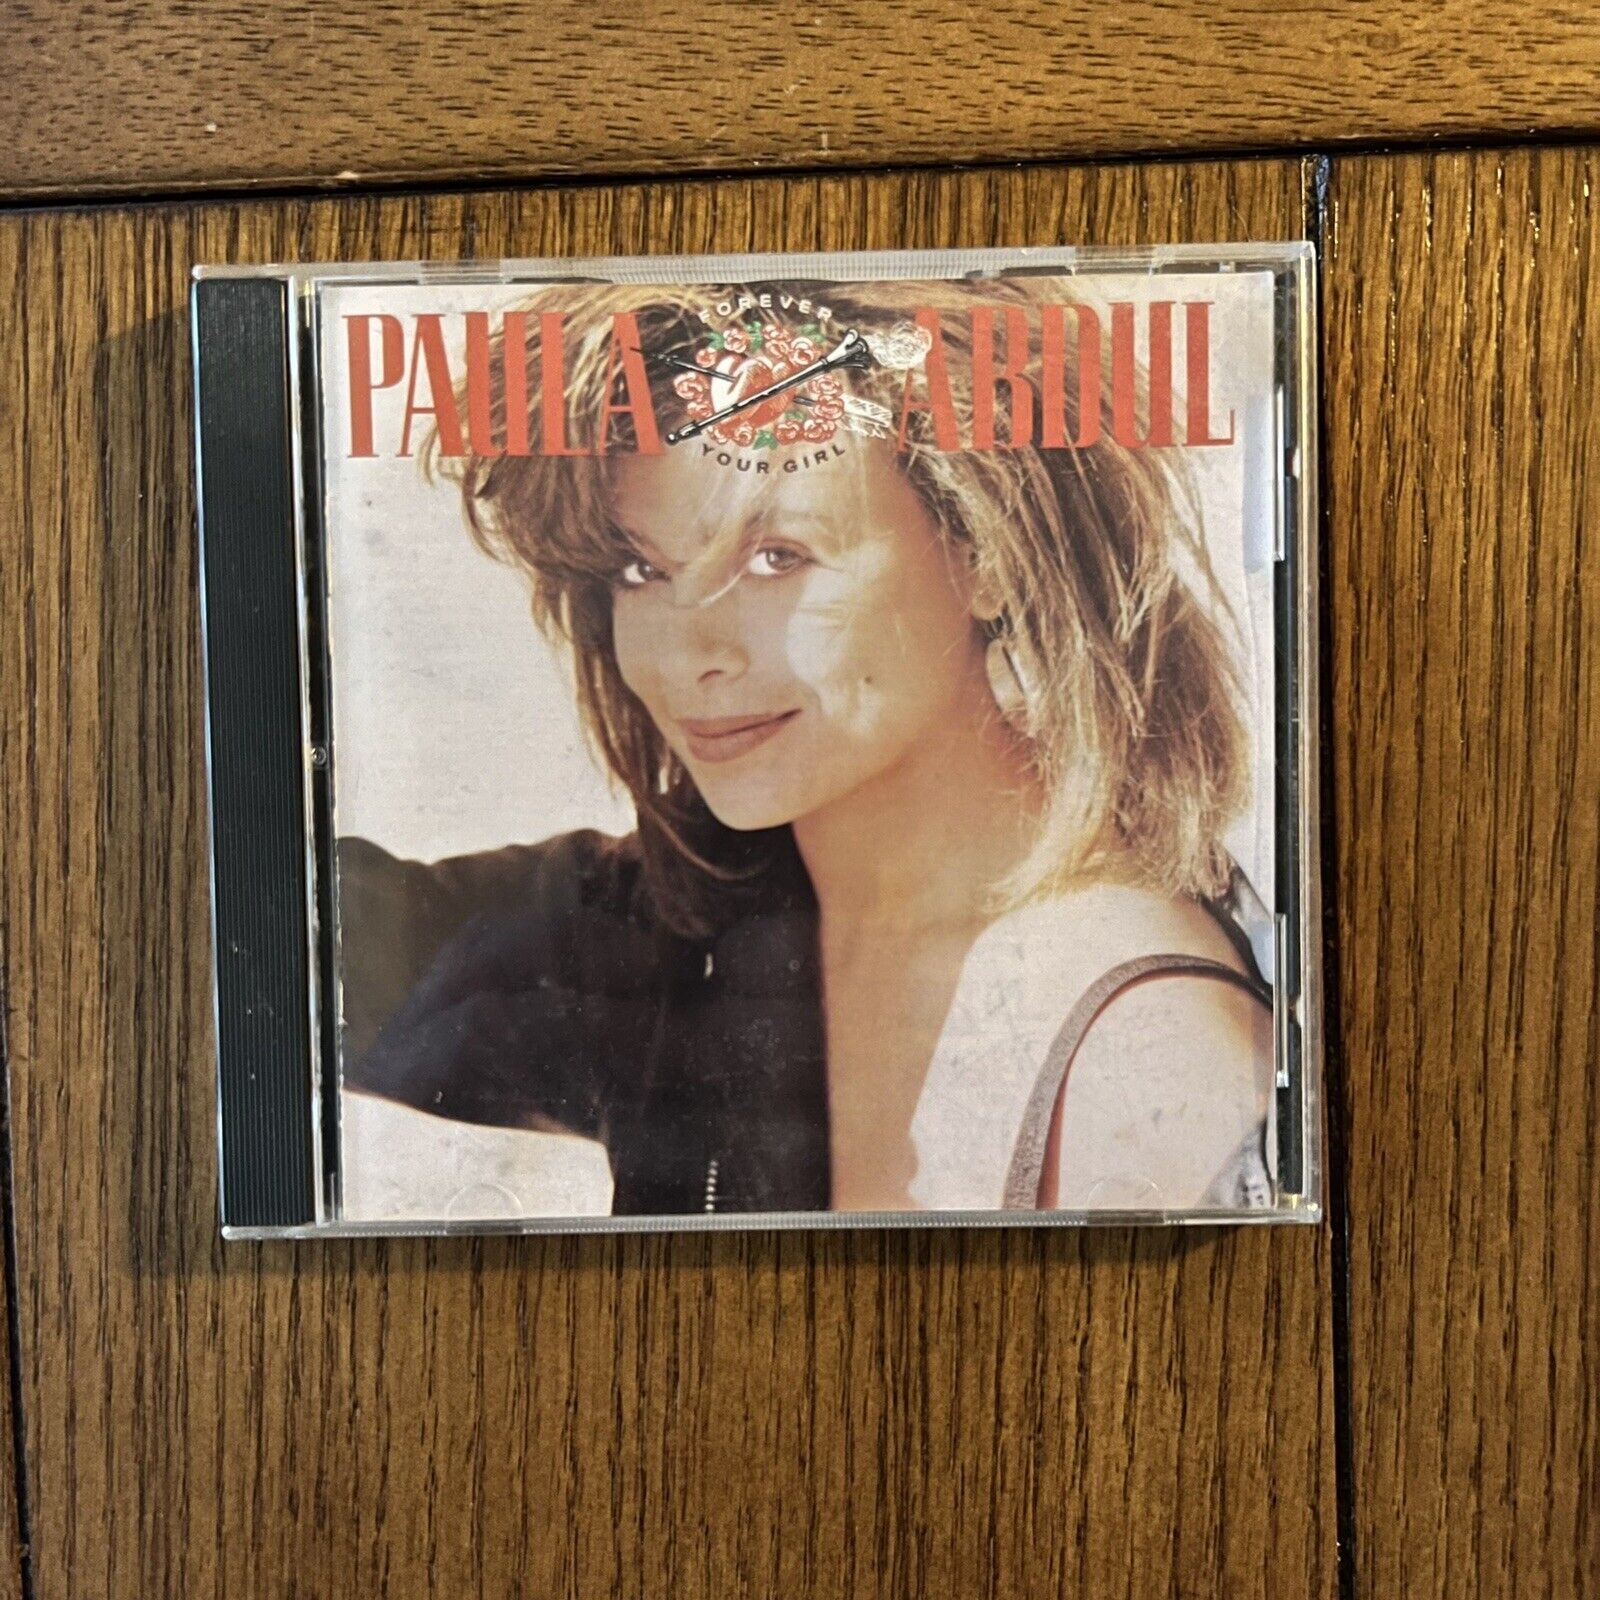 Paula Abdul - Forever Your Girl CD (Virgin Records, 1988) VG